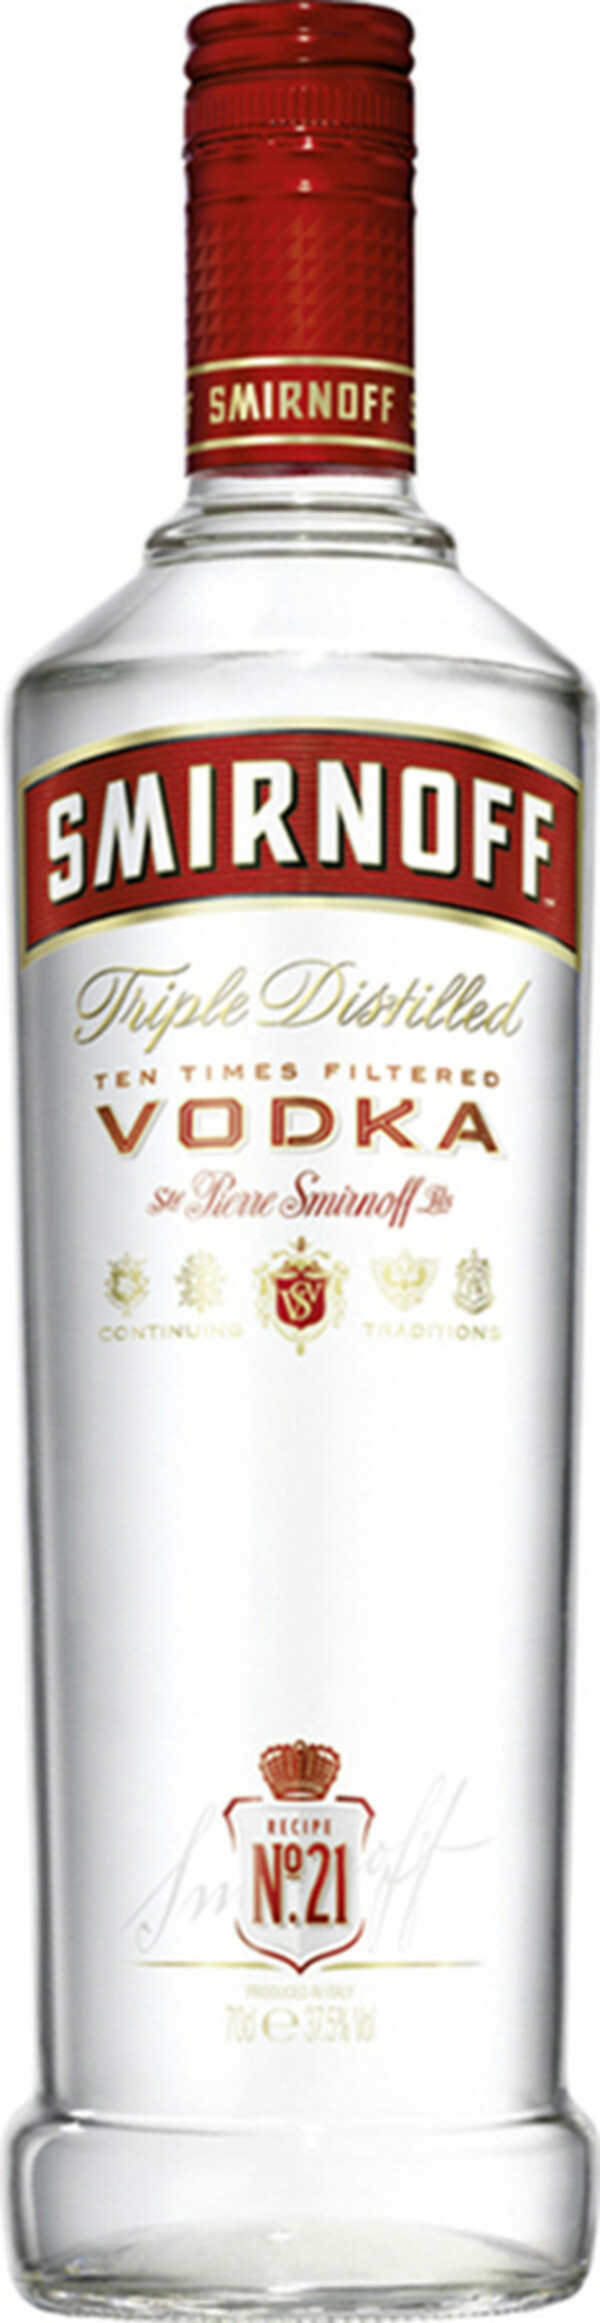 Bild 1 von Smirnoff Premium Vodka Nr. 21 0,7 ltr